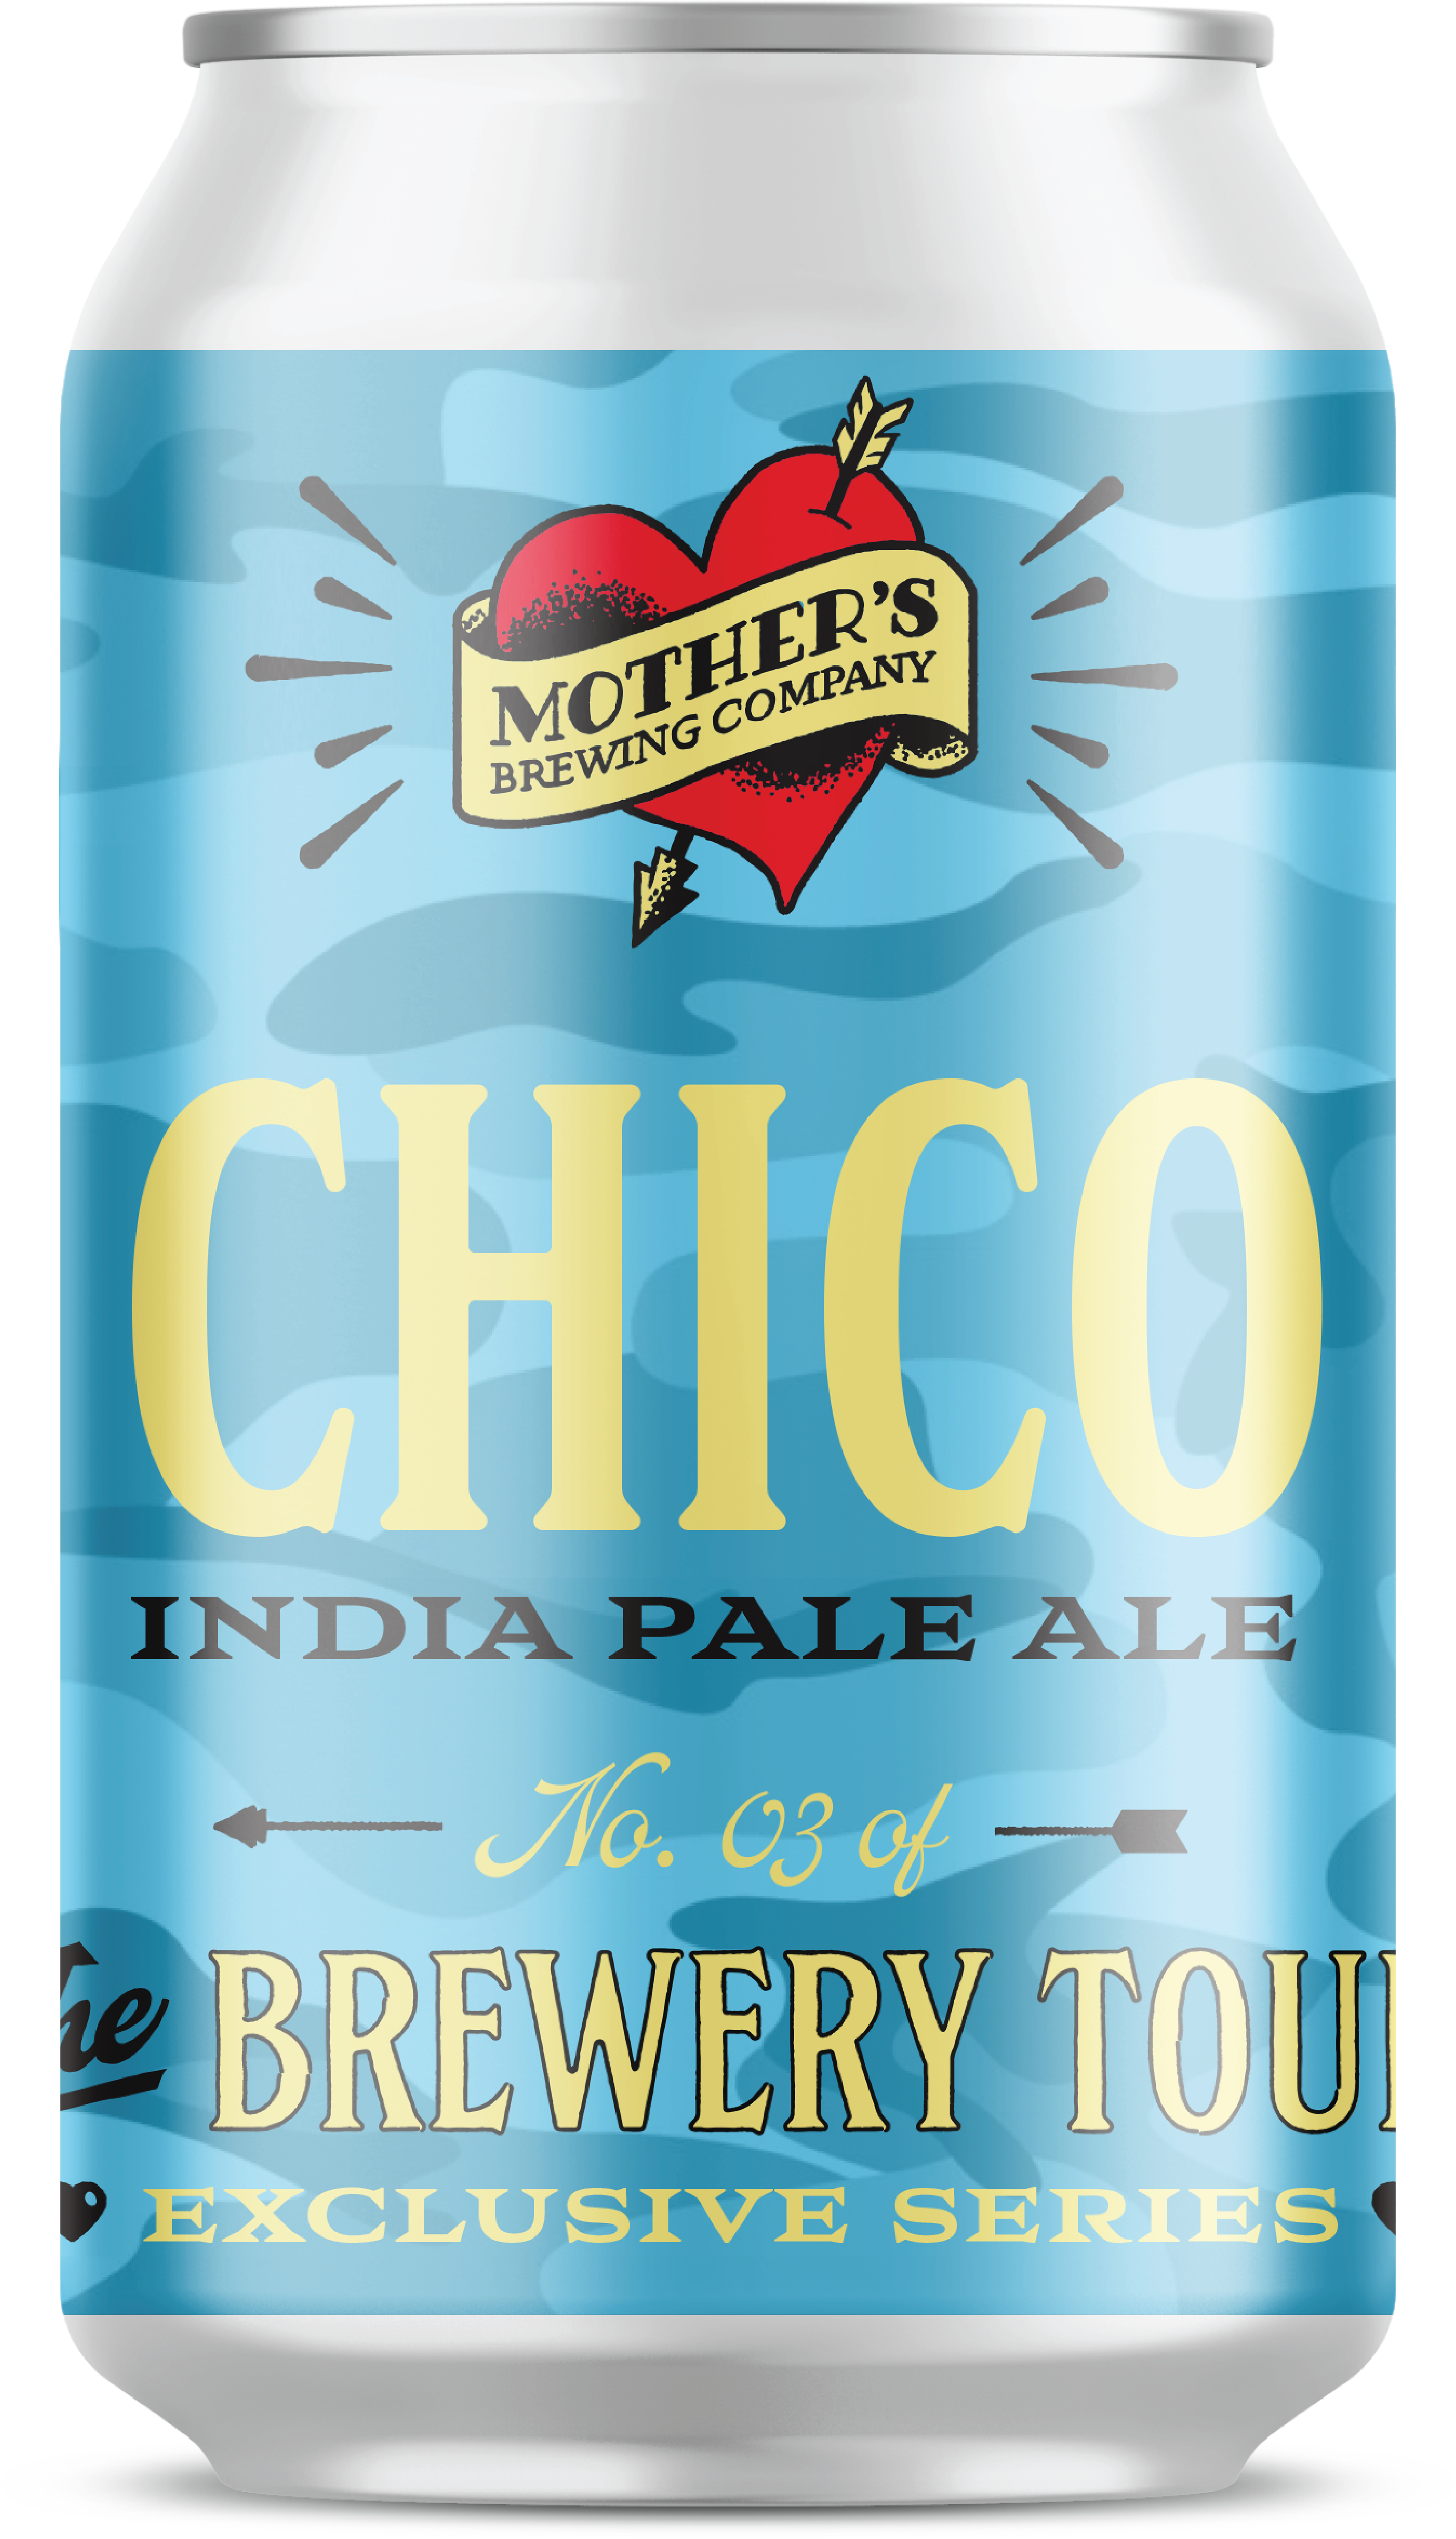 Chico India Pale Ale